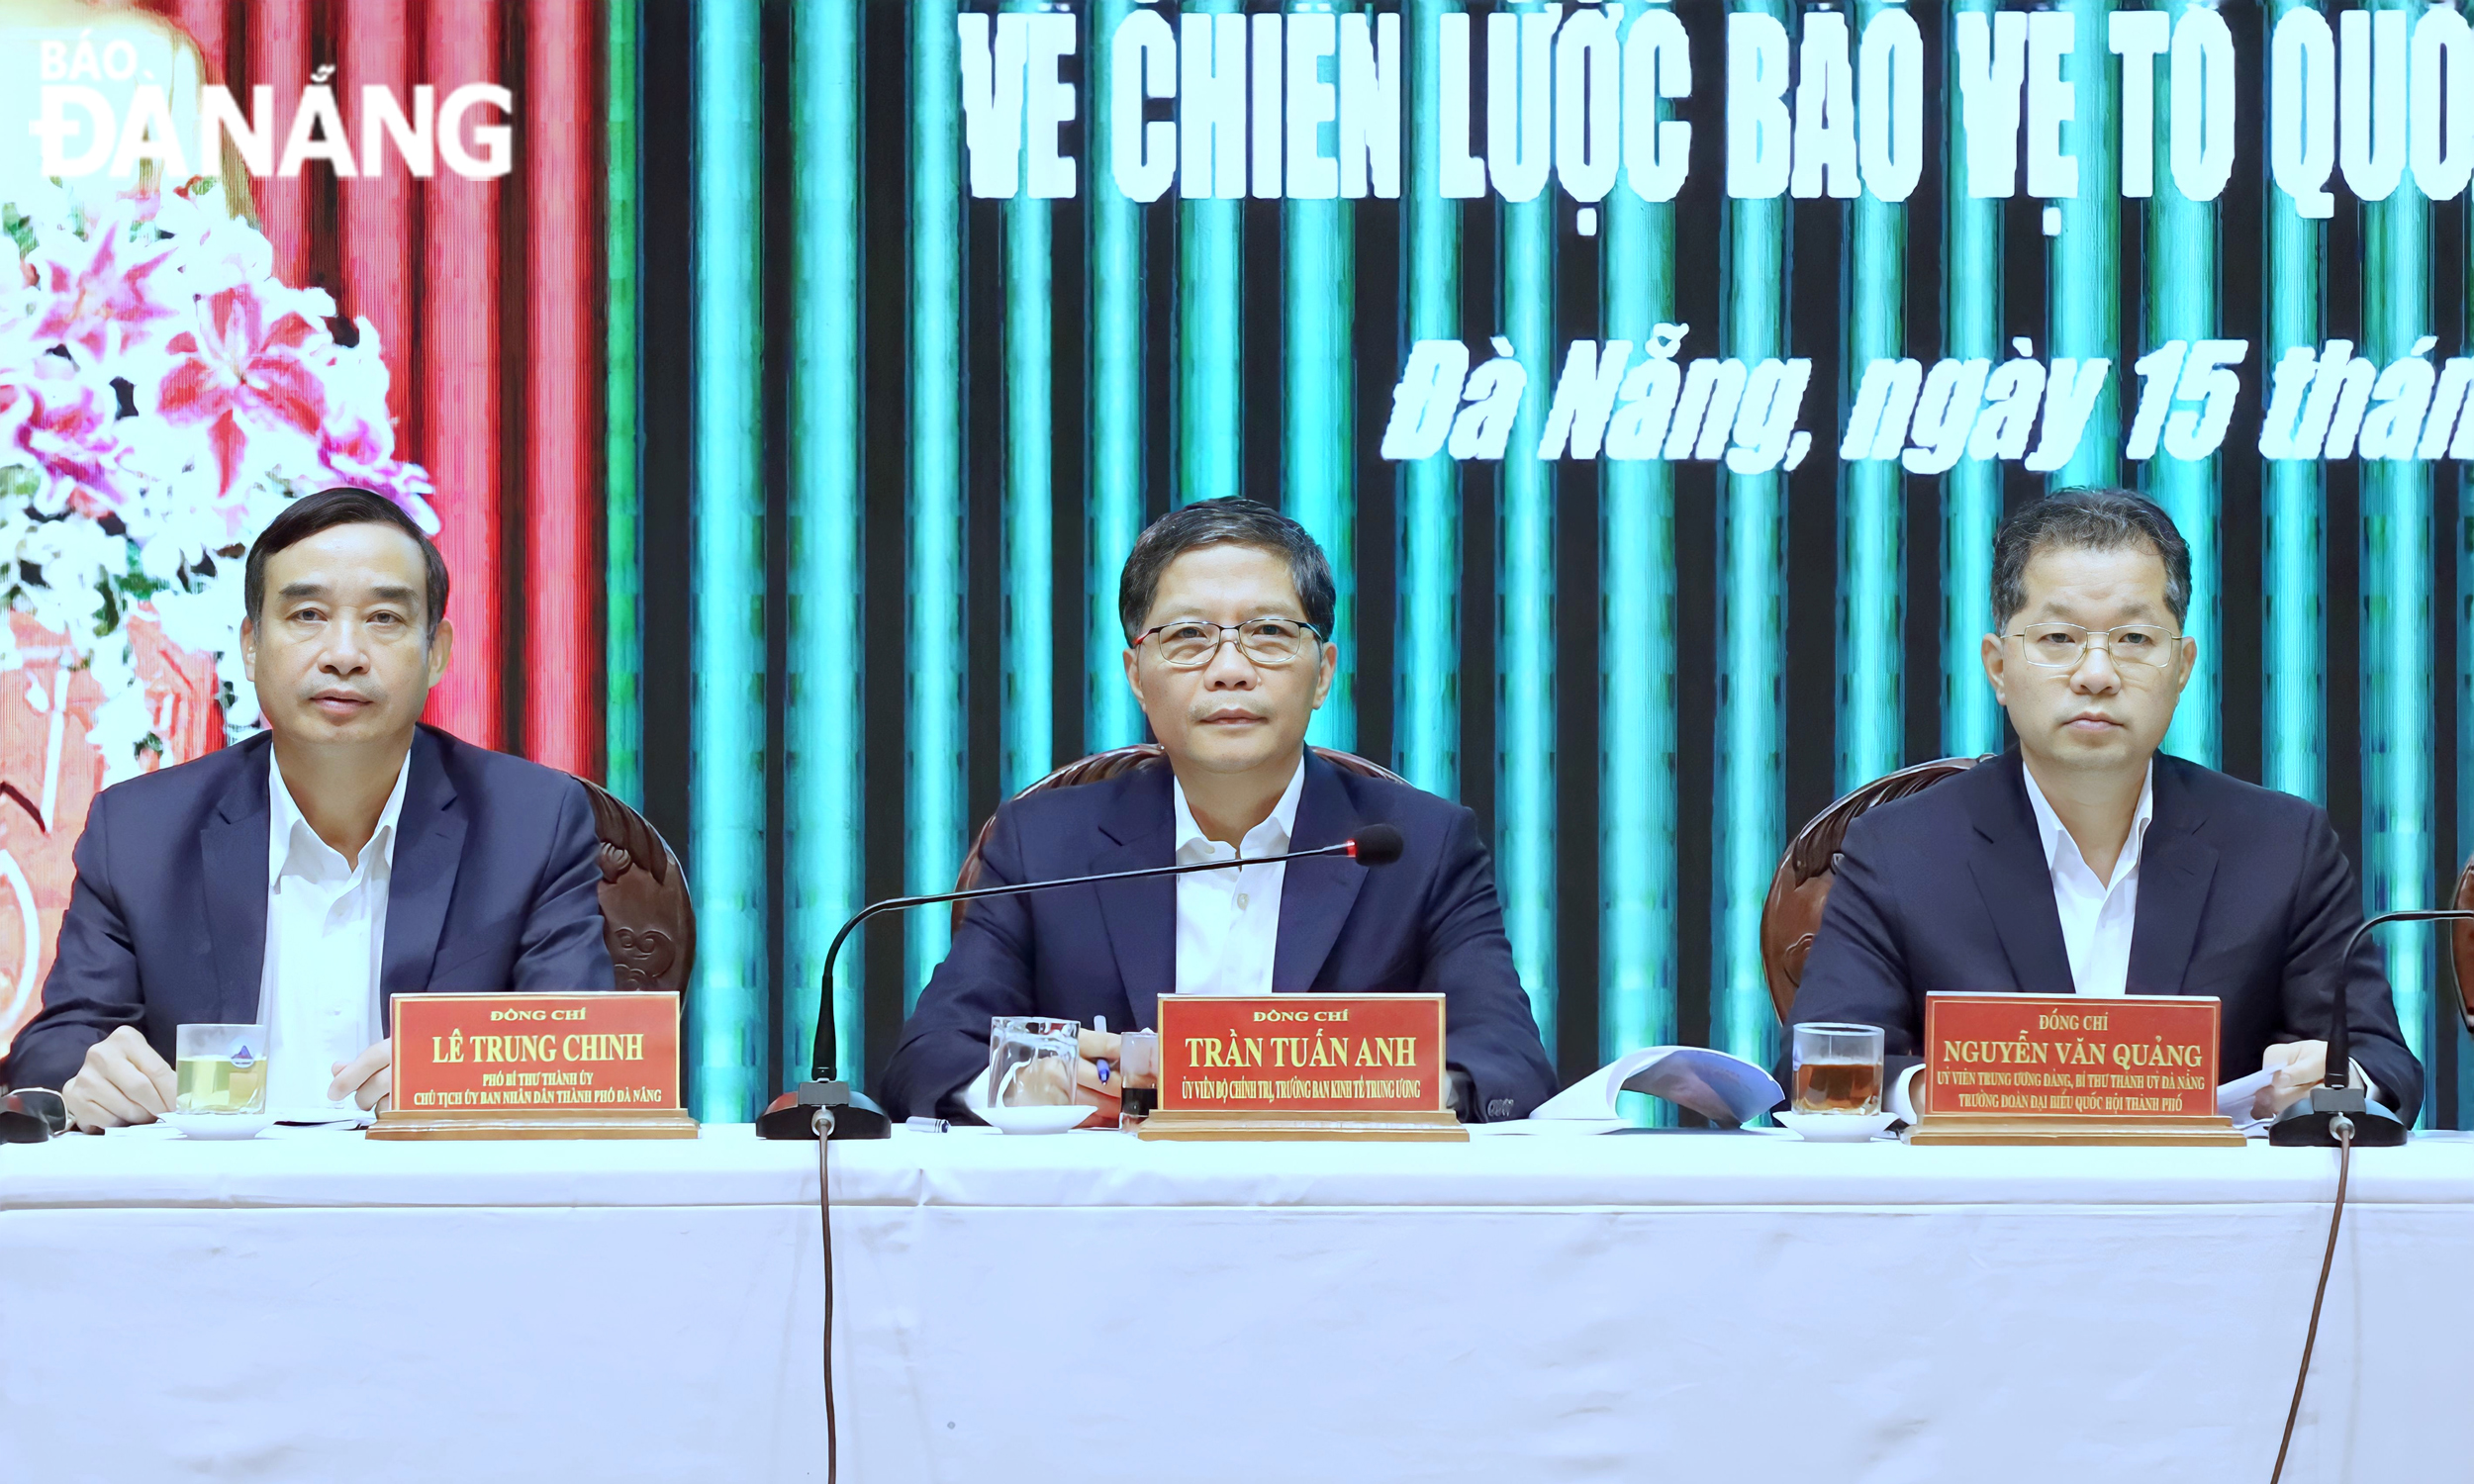 Trưởng ban Kinh tế Trung ương Trần Tuấn Anh (giữa), Bí thư Thành ủy Nguyễn Văn Quảng (bên phải) và Chủ tịch UBND thành phố Lê Trung Chinh đồng chủ trì hội nghị. Ảnh: NGỌC PHÚ